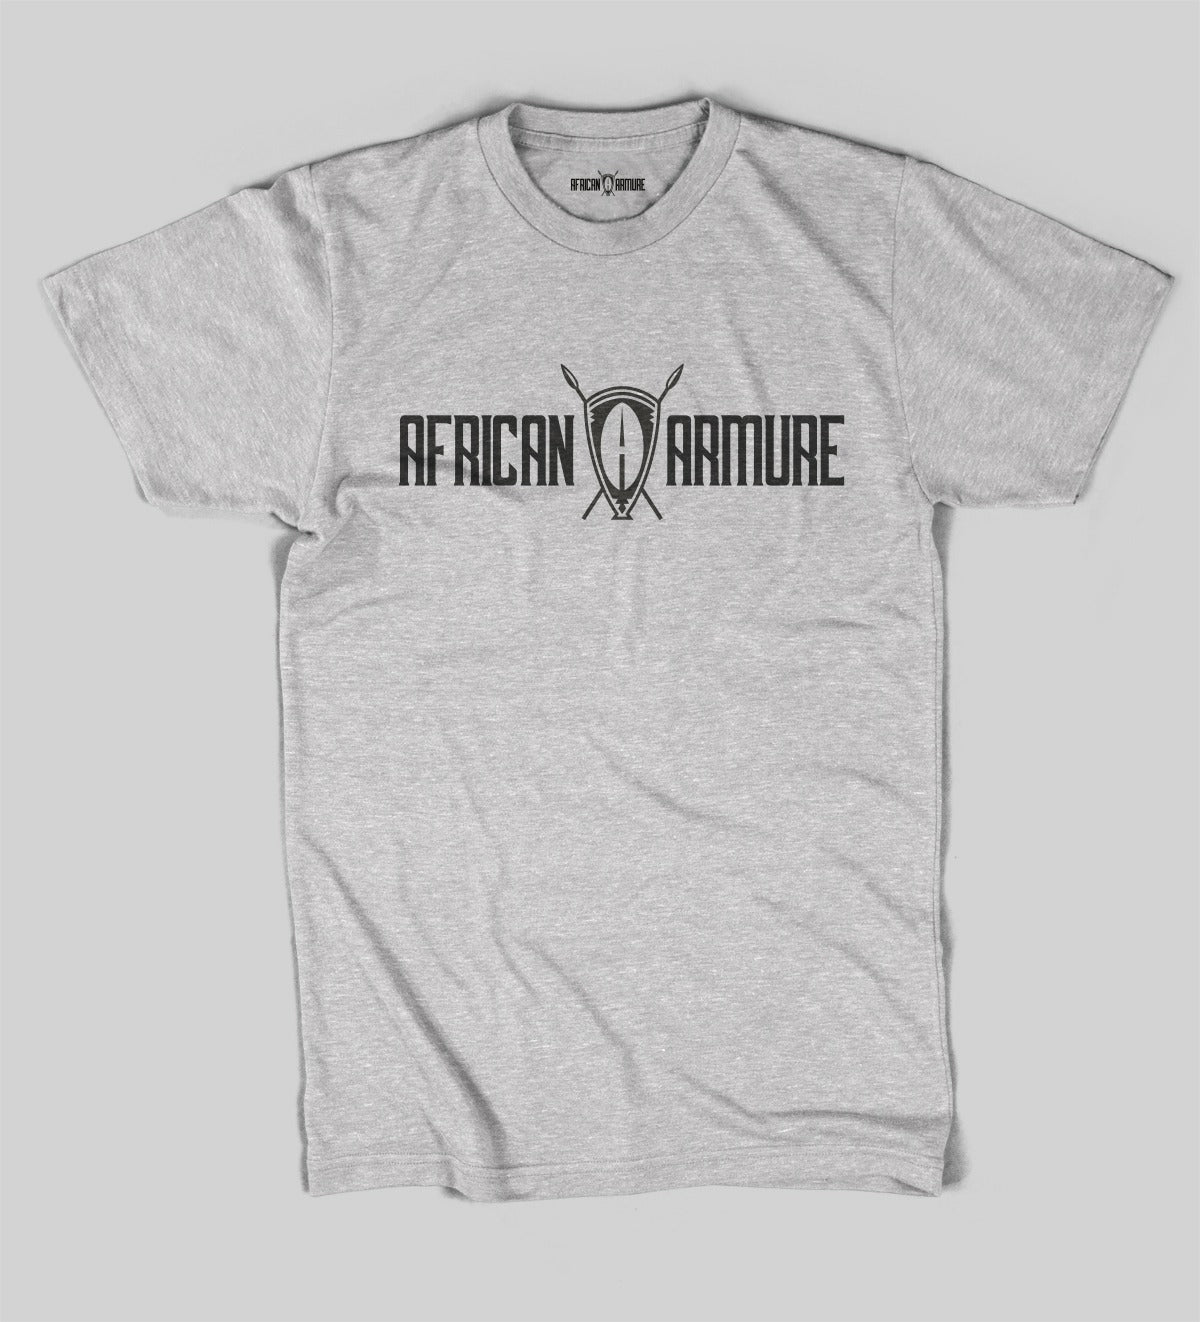 T-shirt African Armure Original